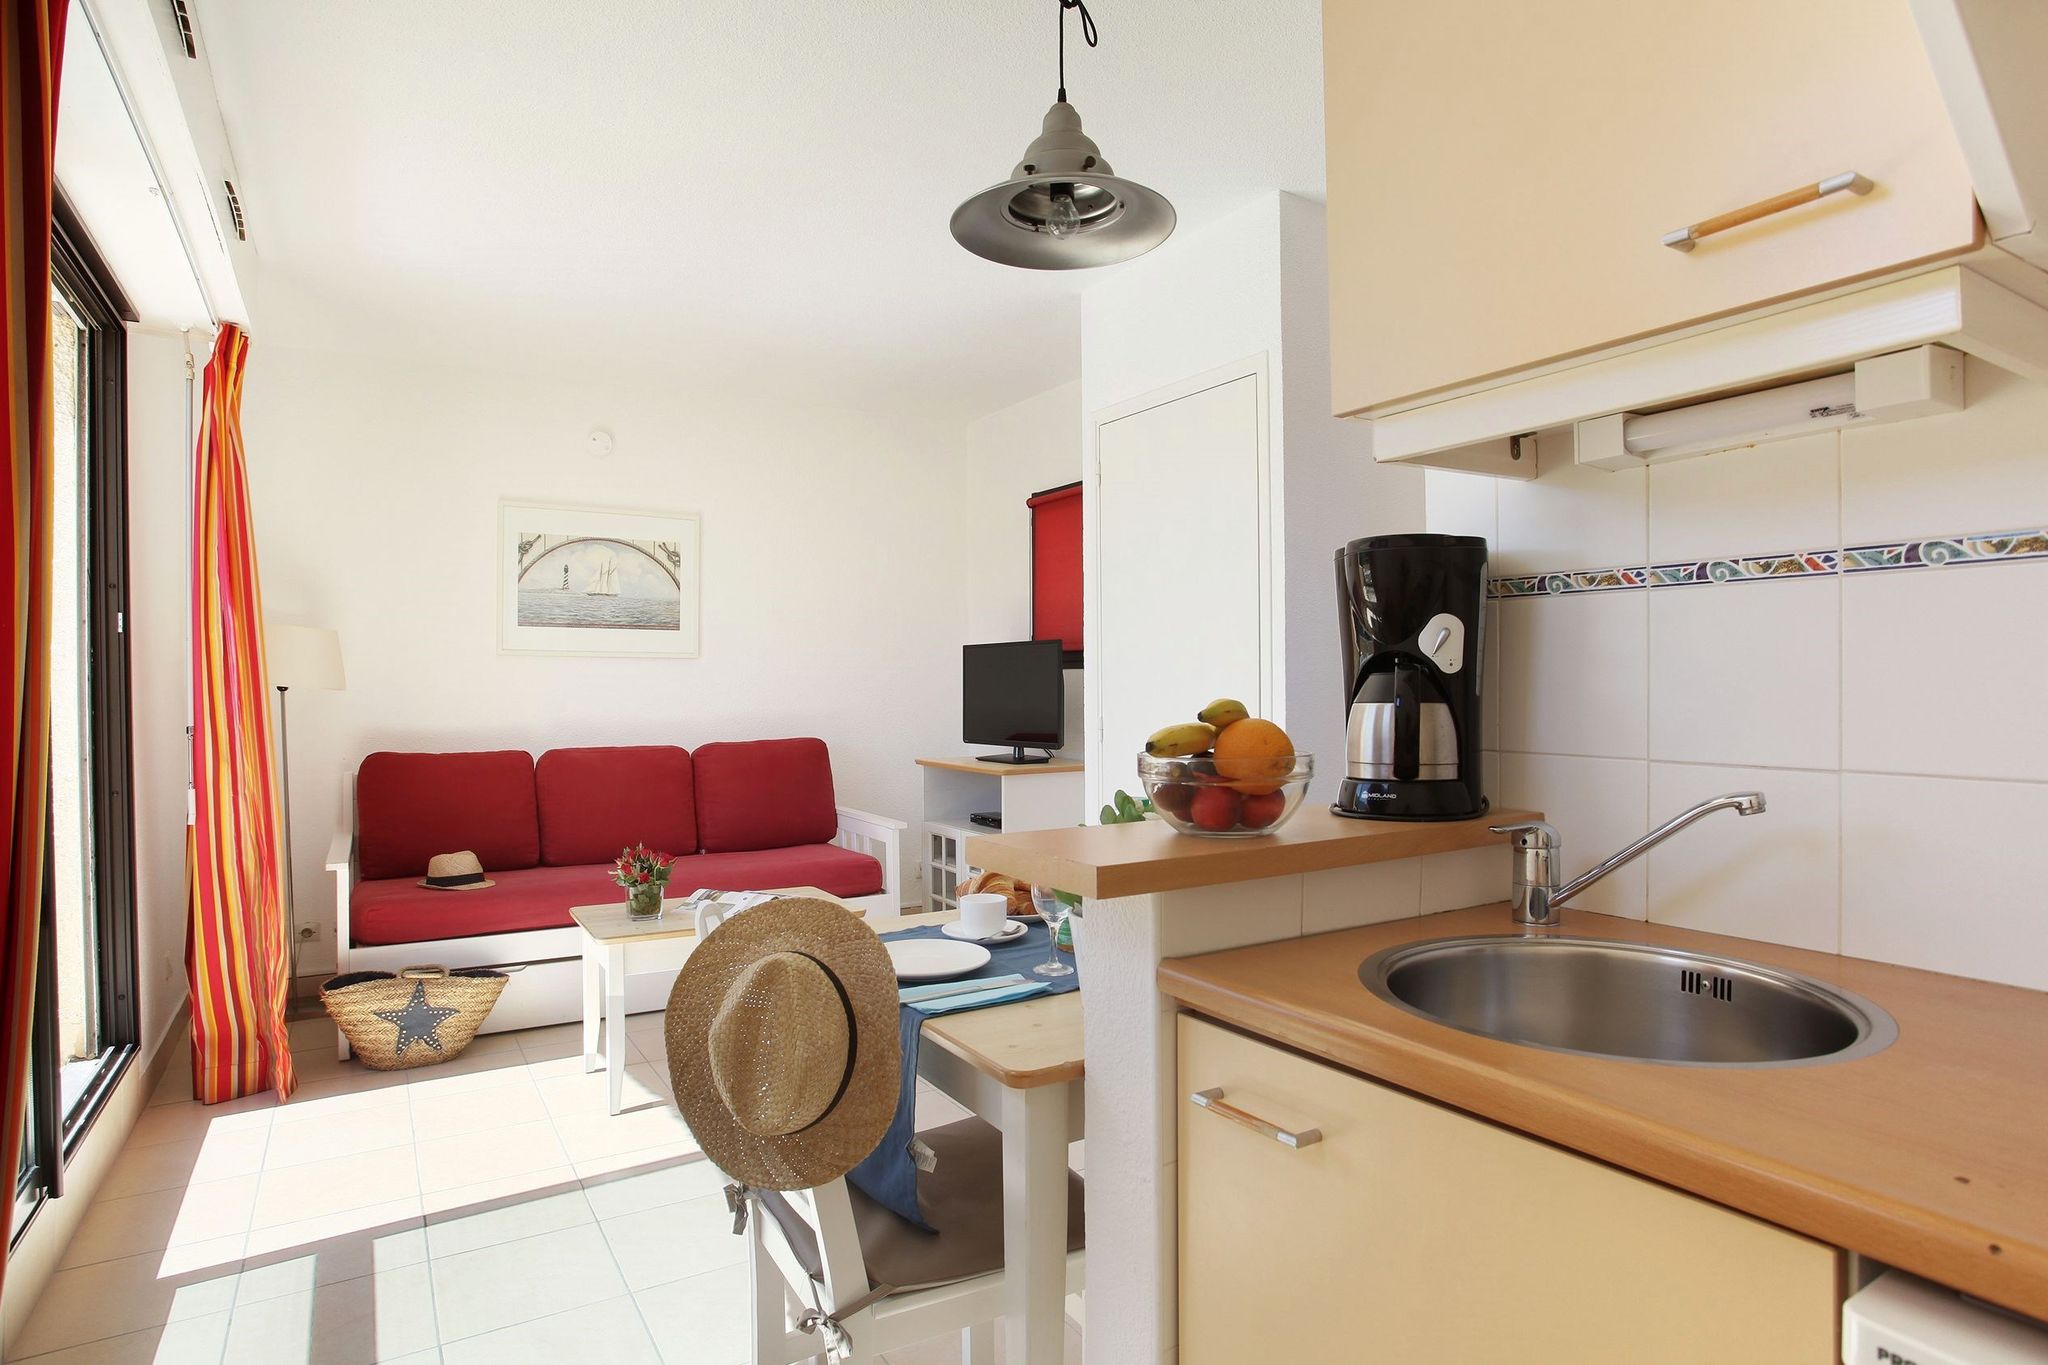 Verzorgd appartement in de populaire badplaats Le Cap d'Agde